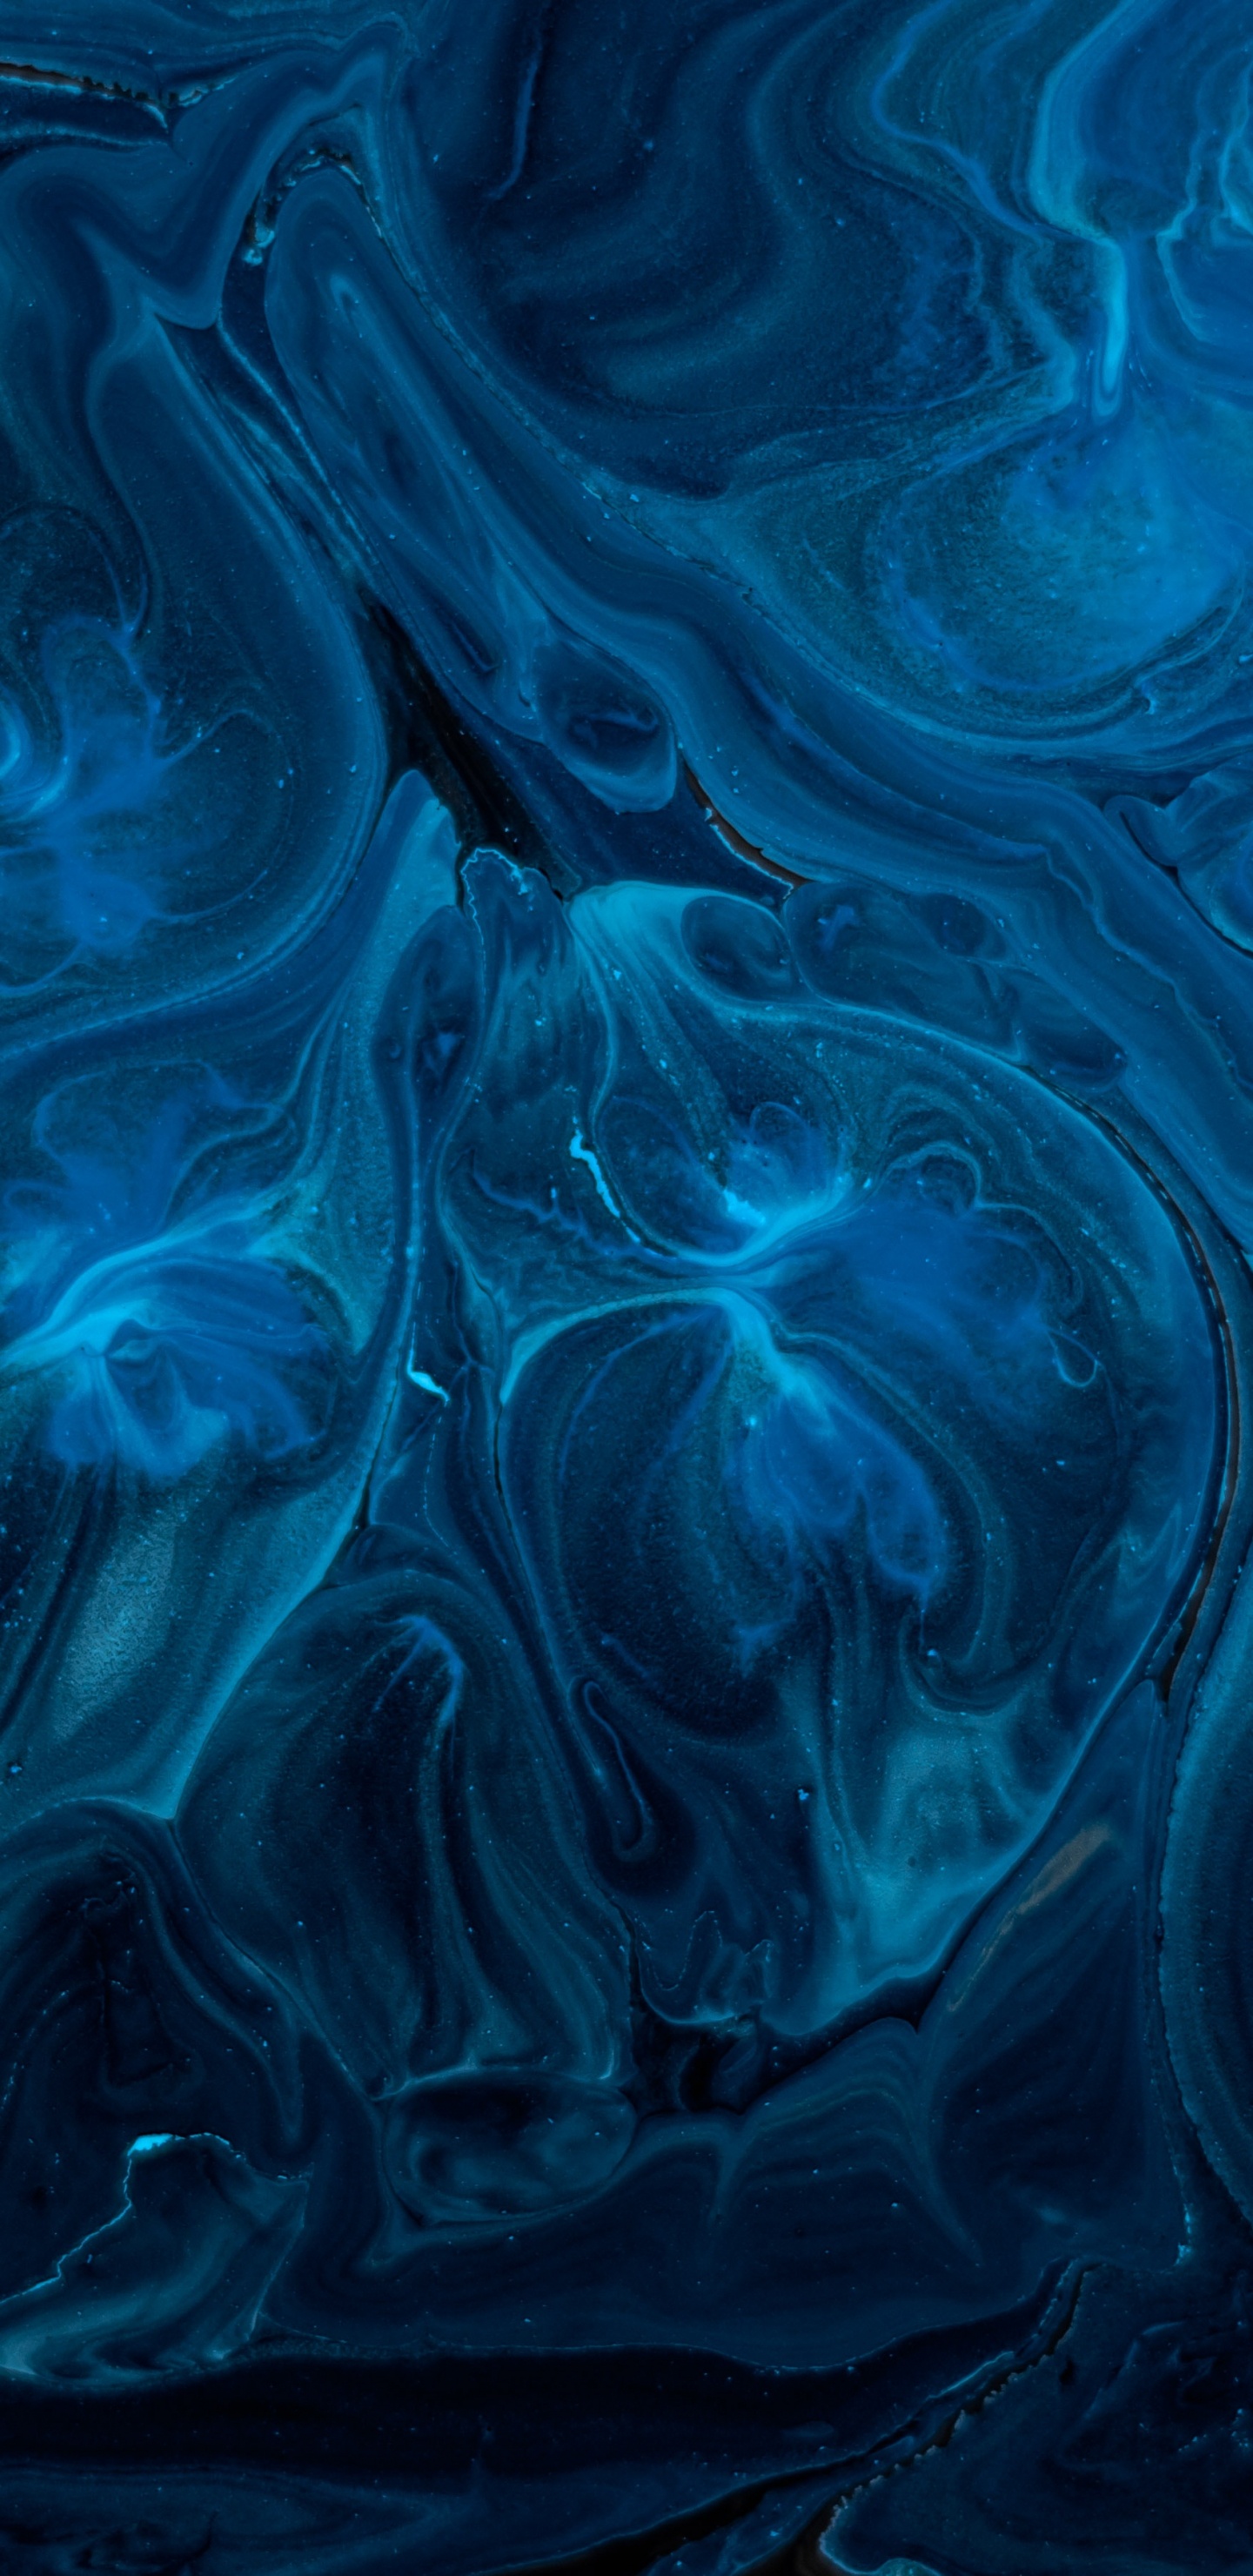 Pintura Abstracta Azul y Negra. Wallpaper in 1440x2960 Resolution